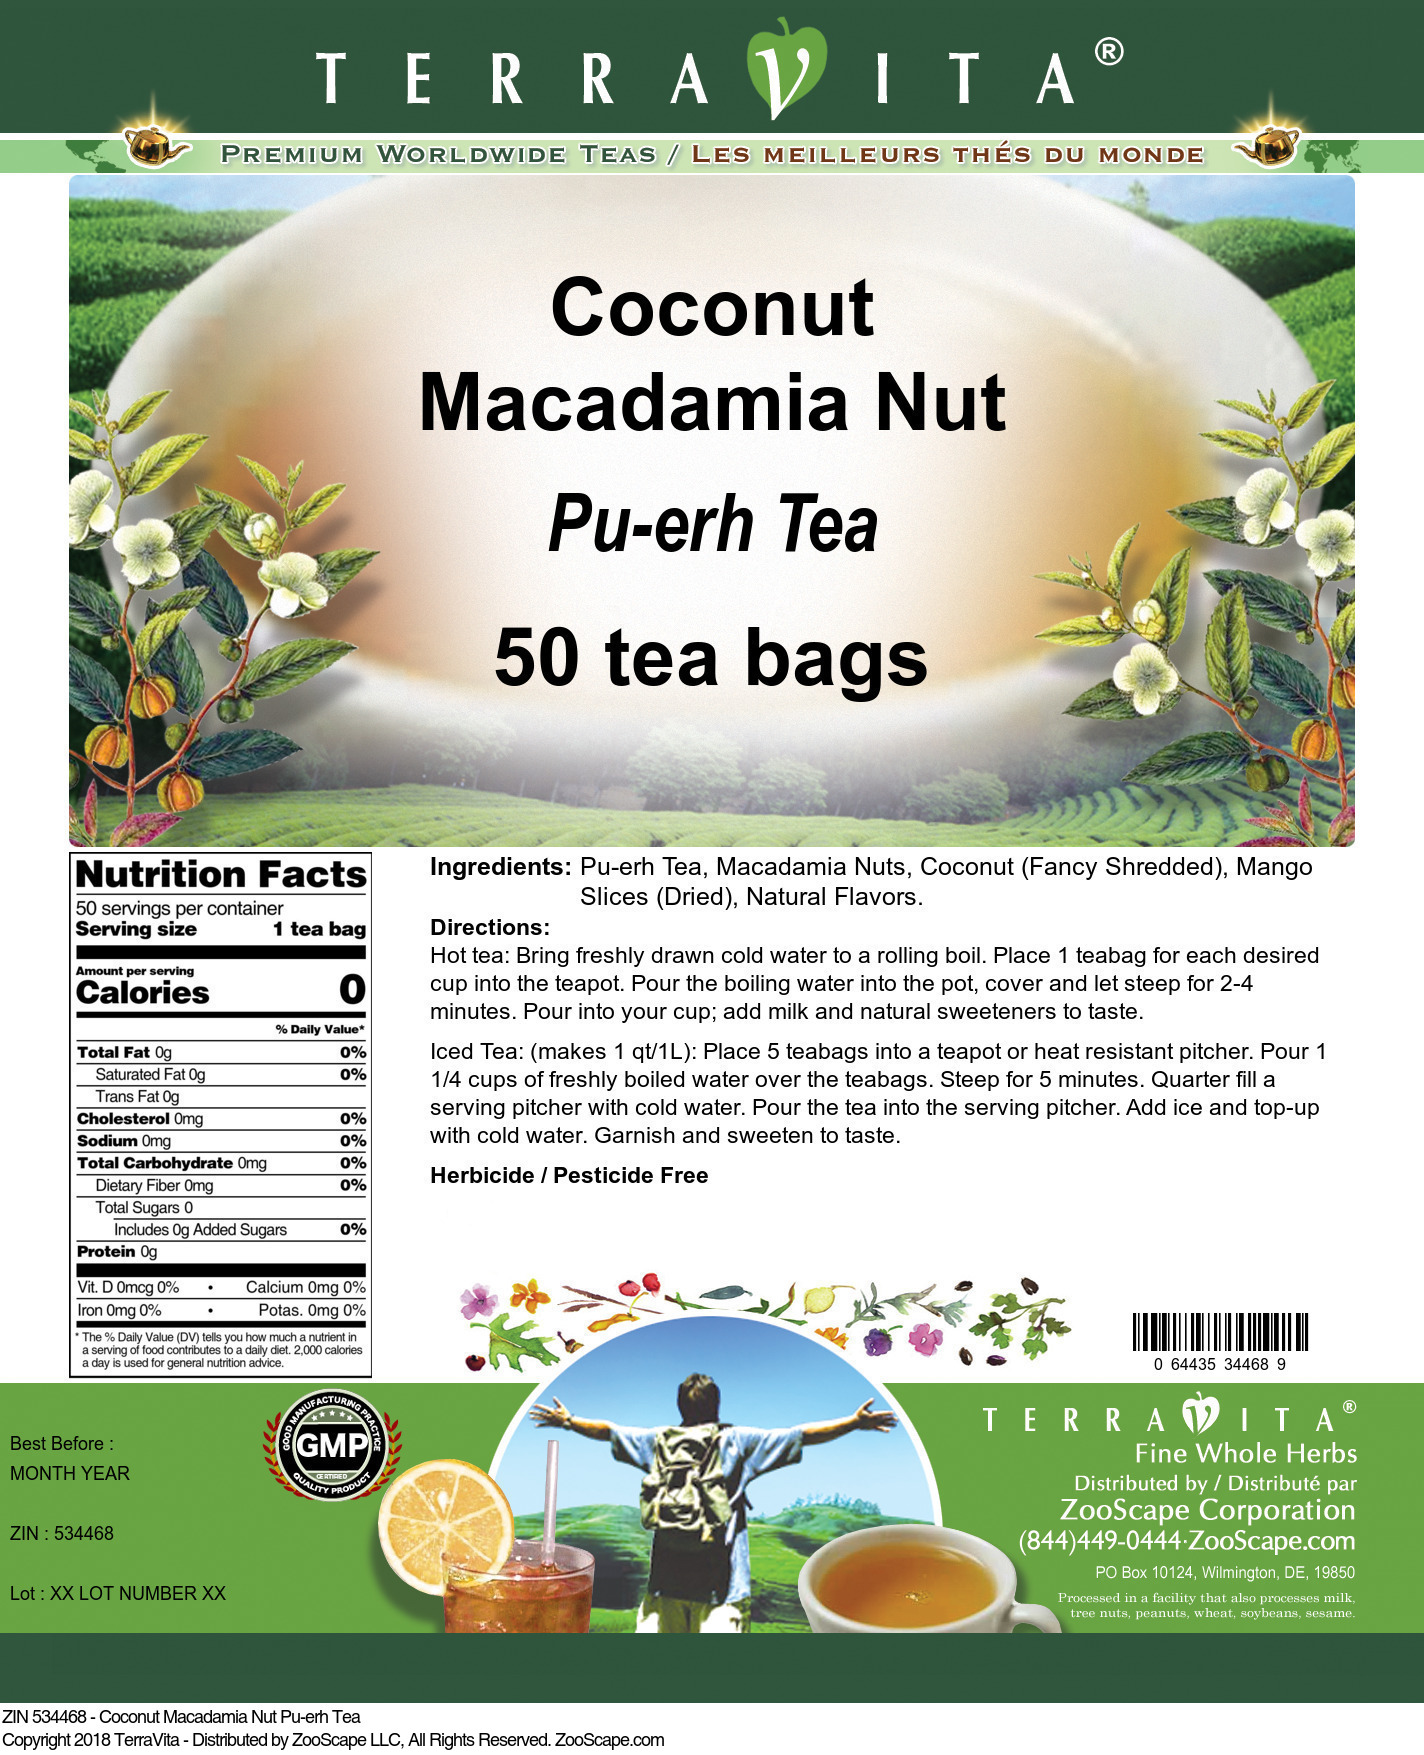 Coconut Macadamia Nut Pu-erh Tea - Label